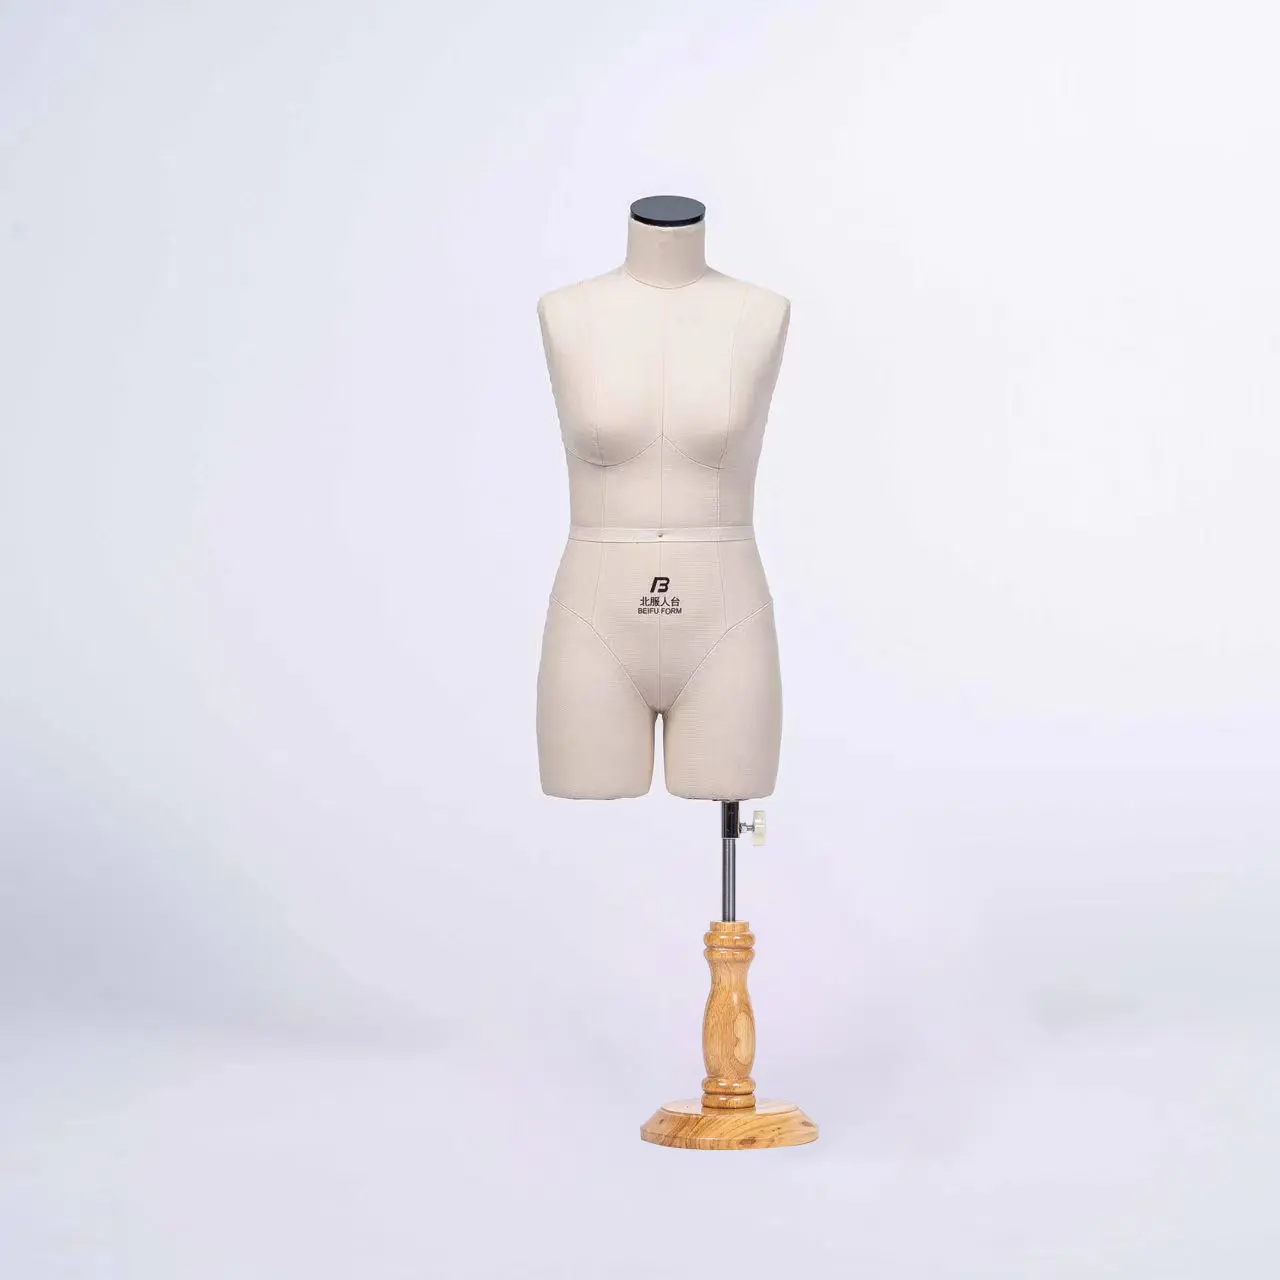 دمية صغيرة مقاس 1/2 مقاس أمريكي ASTM 8S فستان بقصة عارية مخصص لتصميم الملابس المدرسية و طالبة دمية خياطة